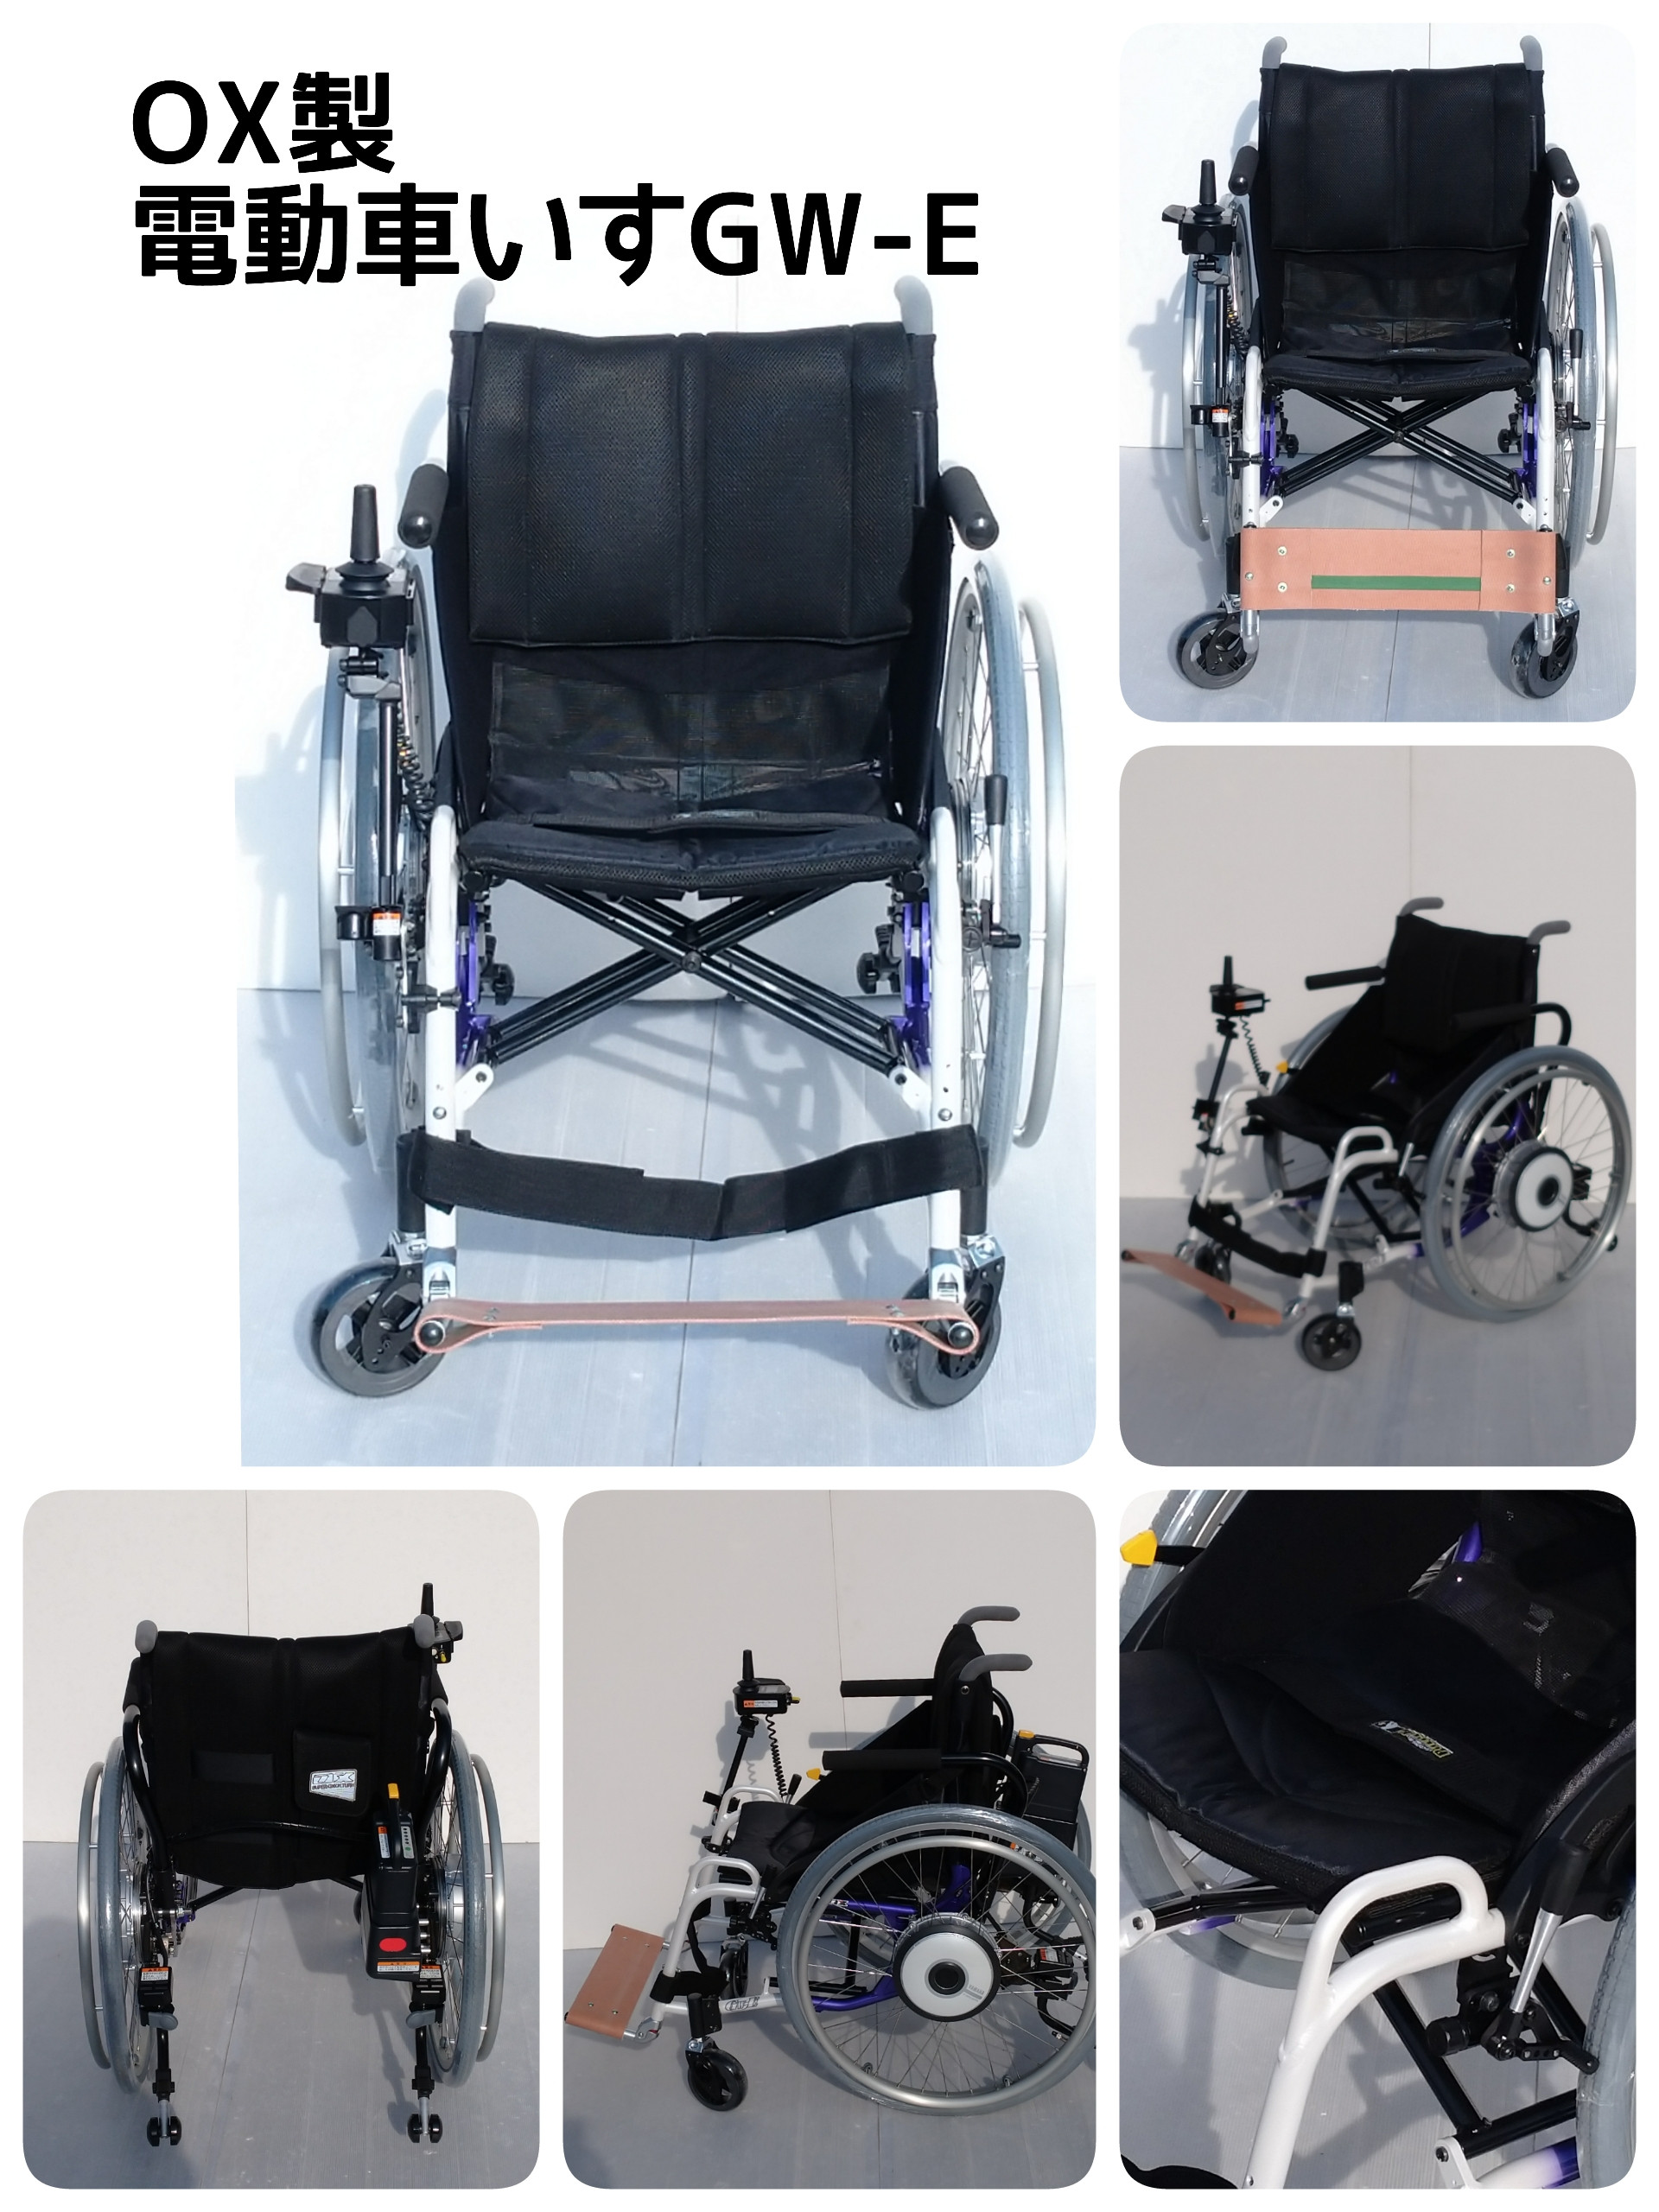 生まれのブランドで 車椅子 OX〘美品・美車〙SX 見てネ❗️ 商品説明 